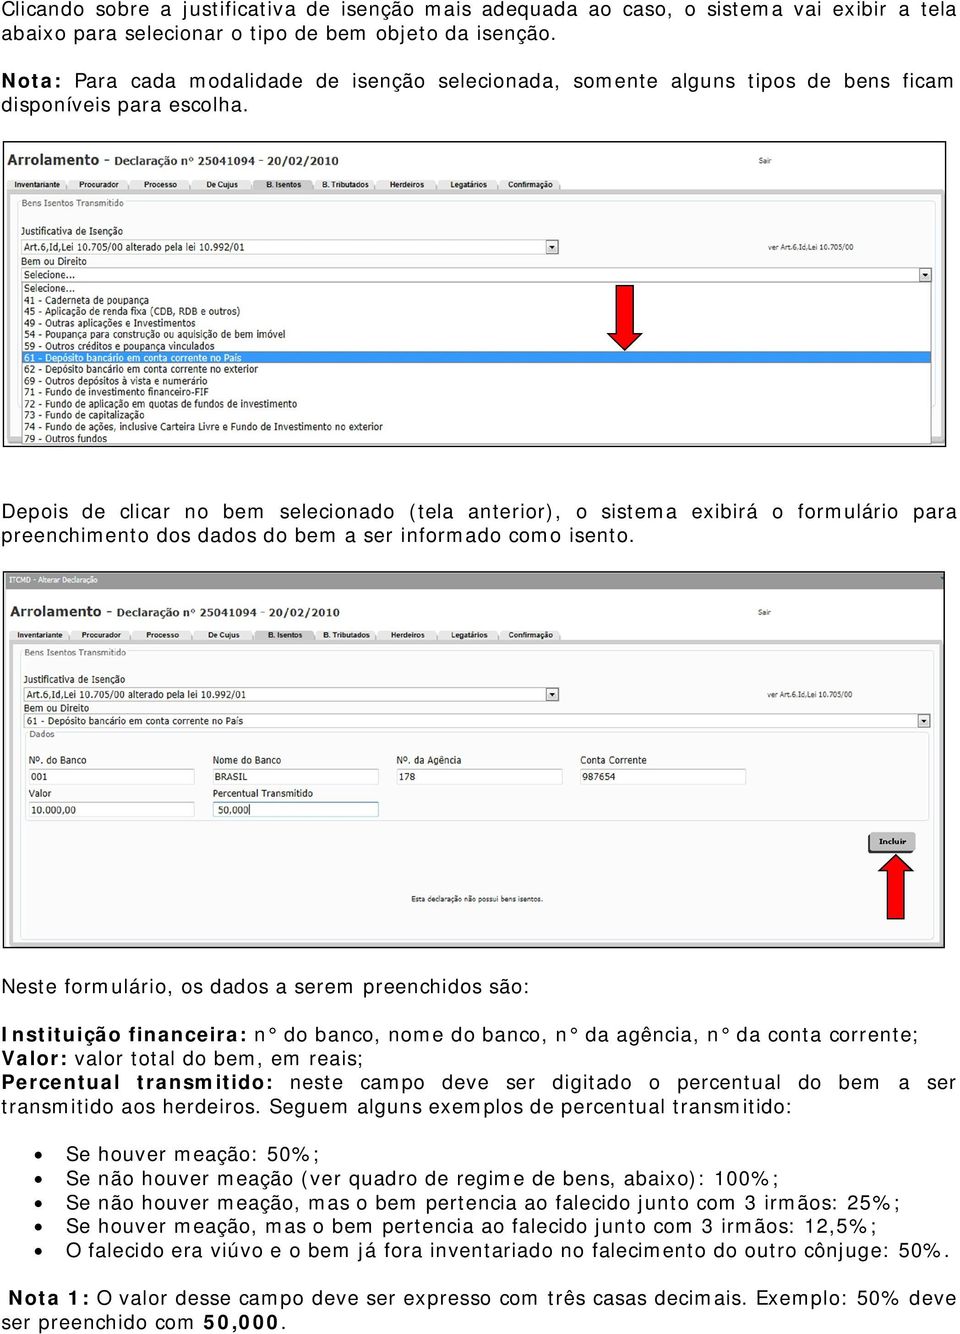 Depois de clicar no bem selecionado (tela anterior), o sistema exibirá o formulário para preenchimento dos dados do bem a ser informado como isento.